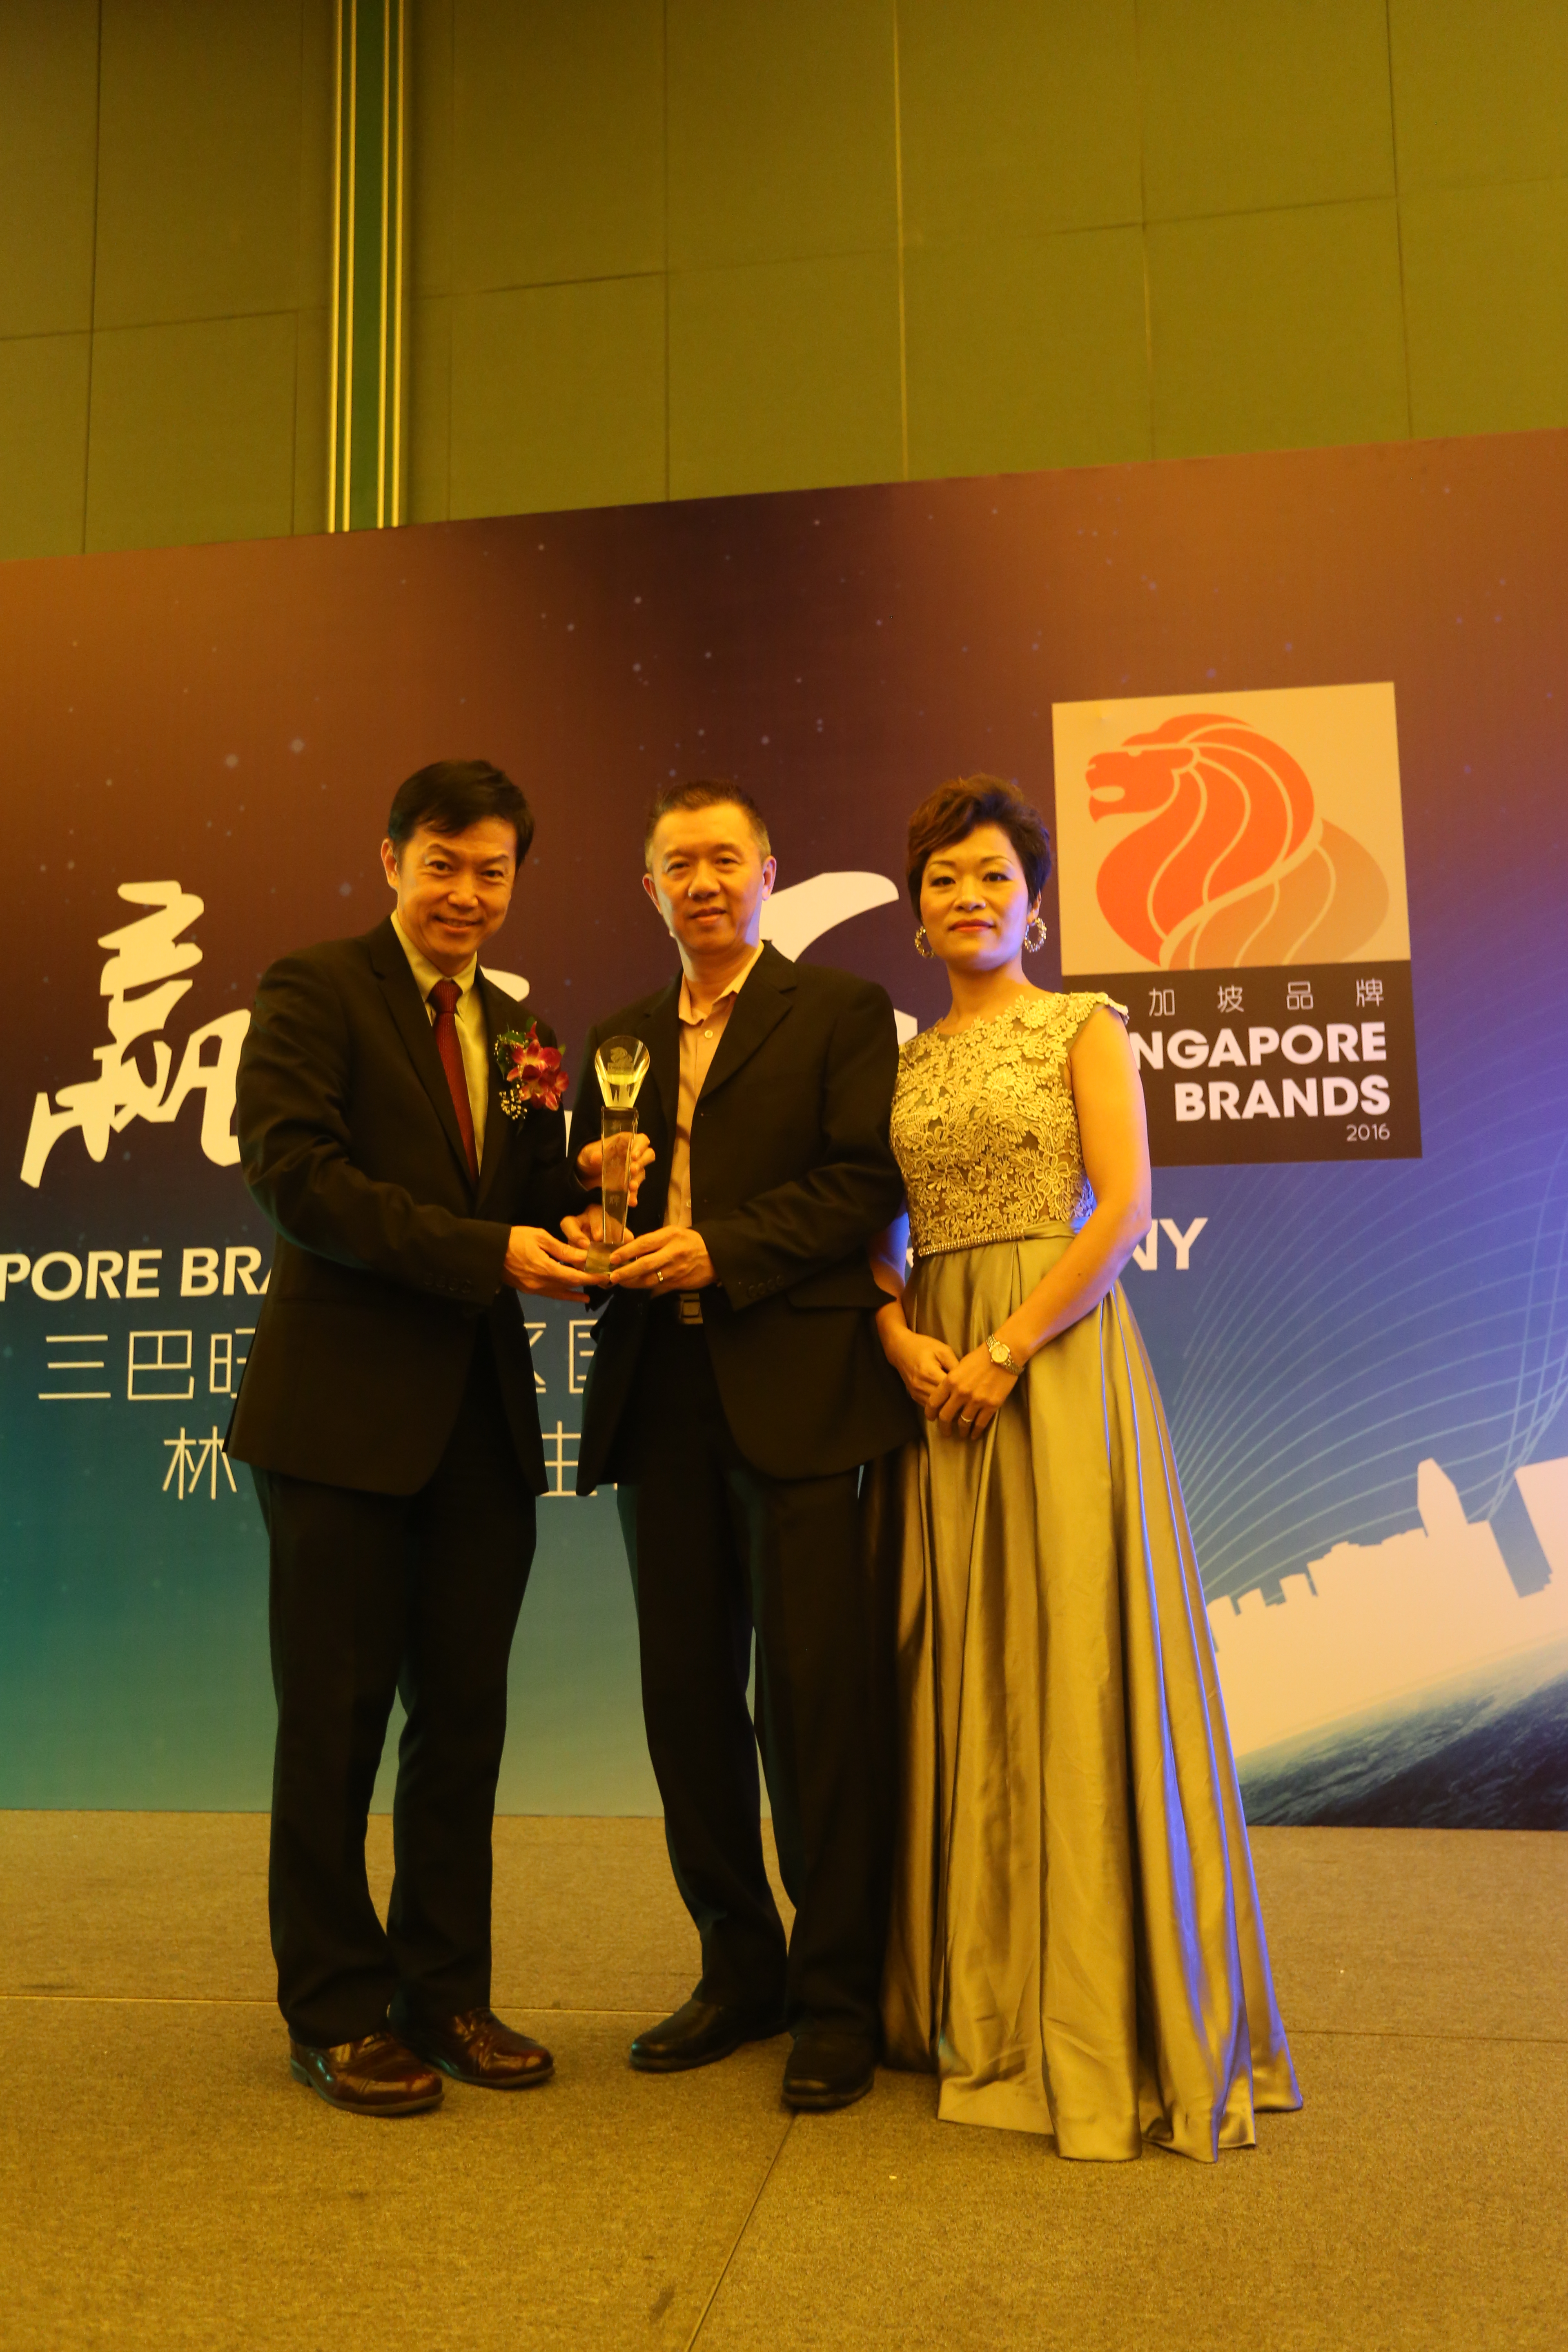 2015 Singapore Brands Awards